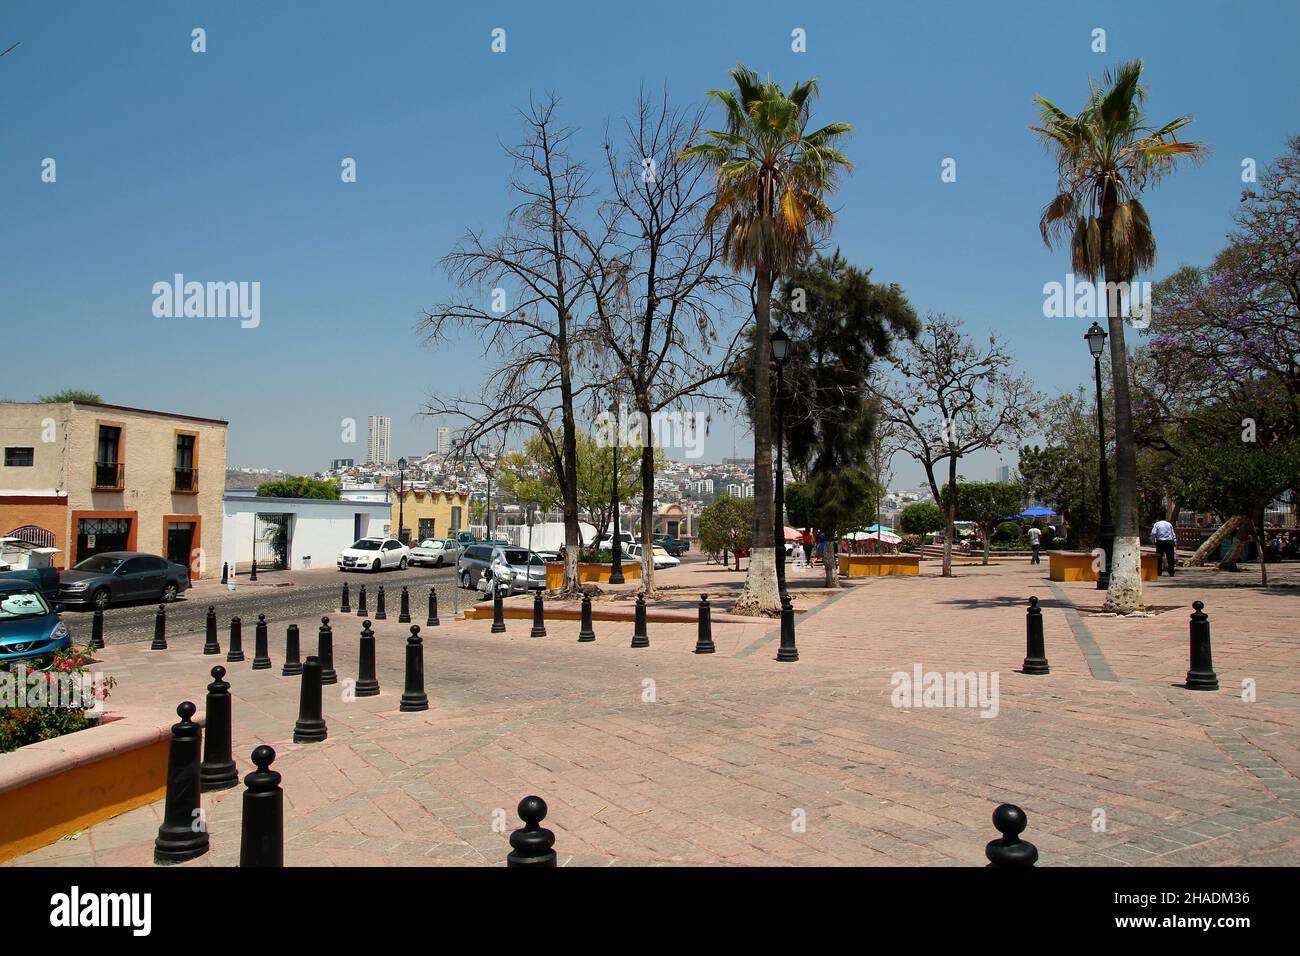 Central square in Santiago de Queretaro city, Queretaro, Mexico. Stock Photo